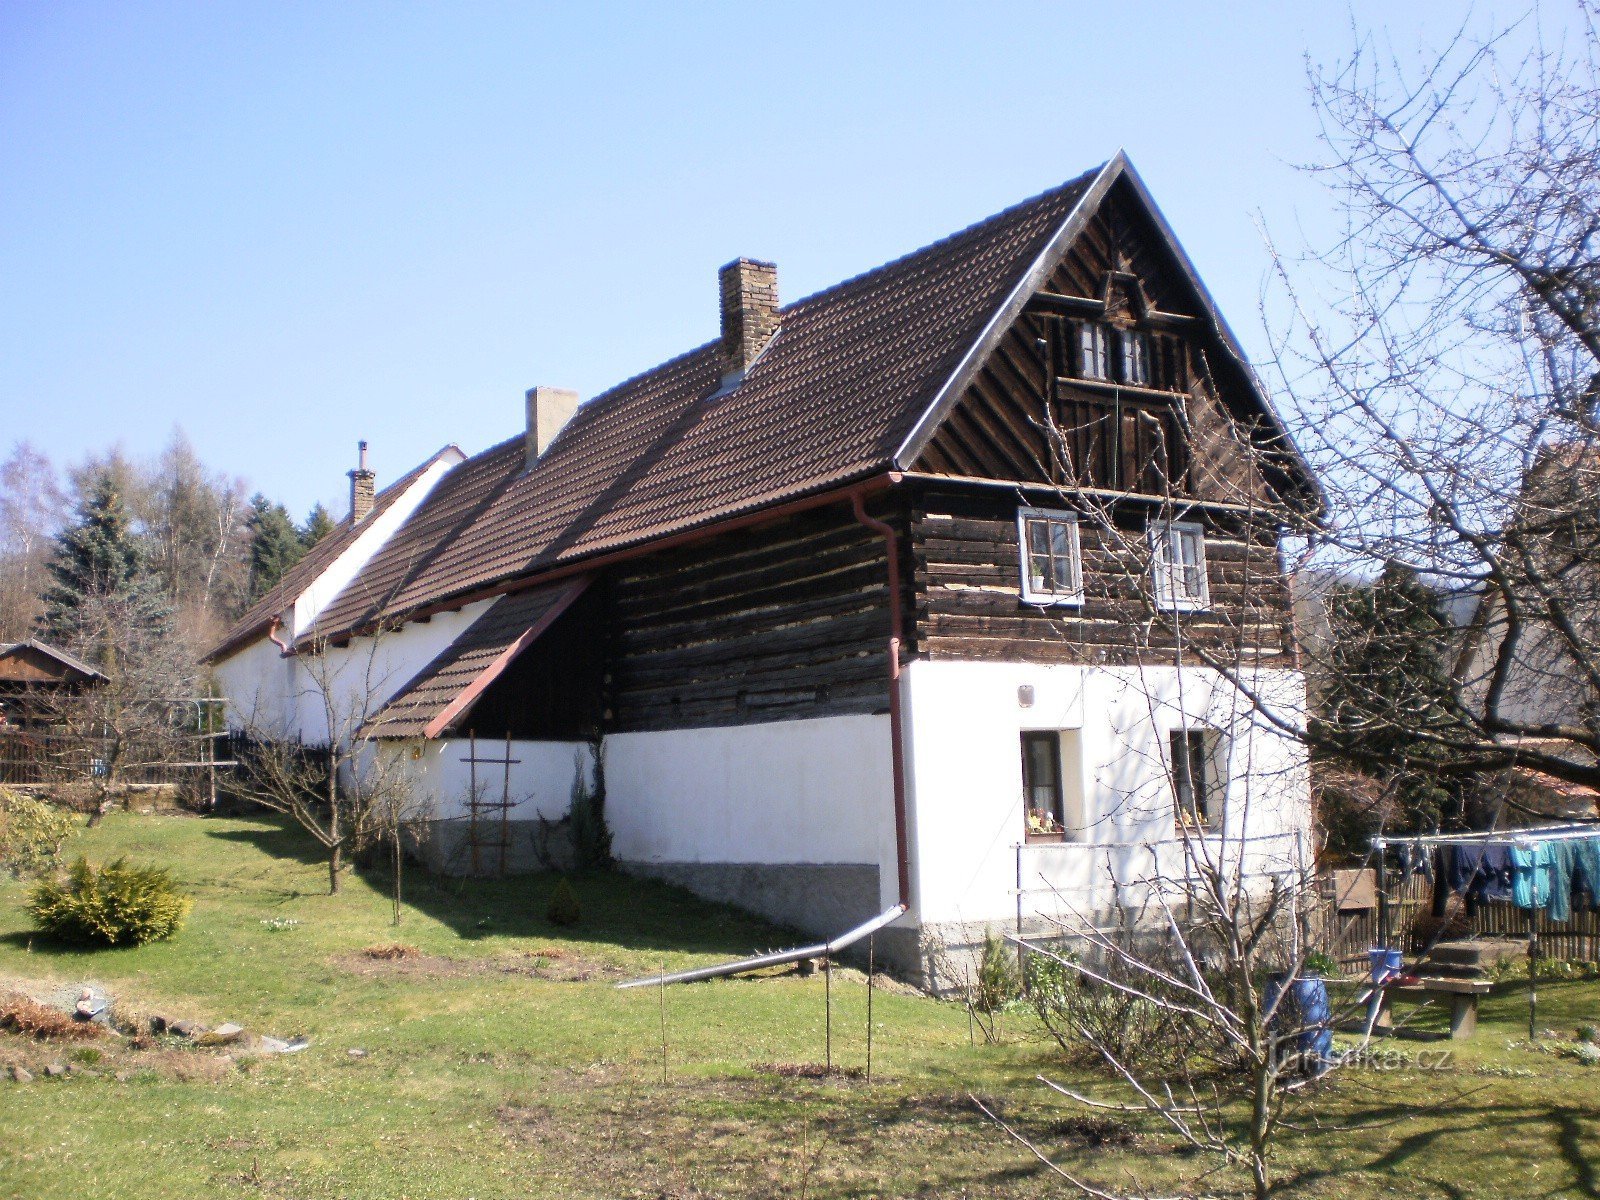 cabana de lemn protejata